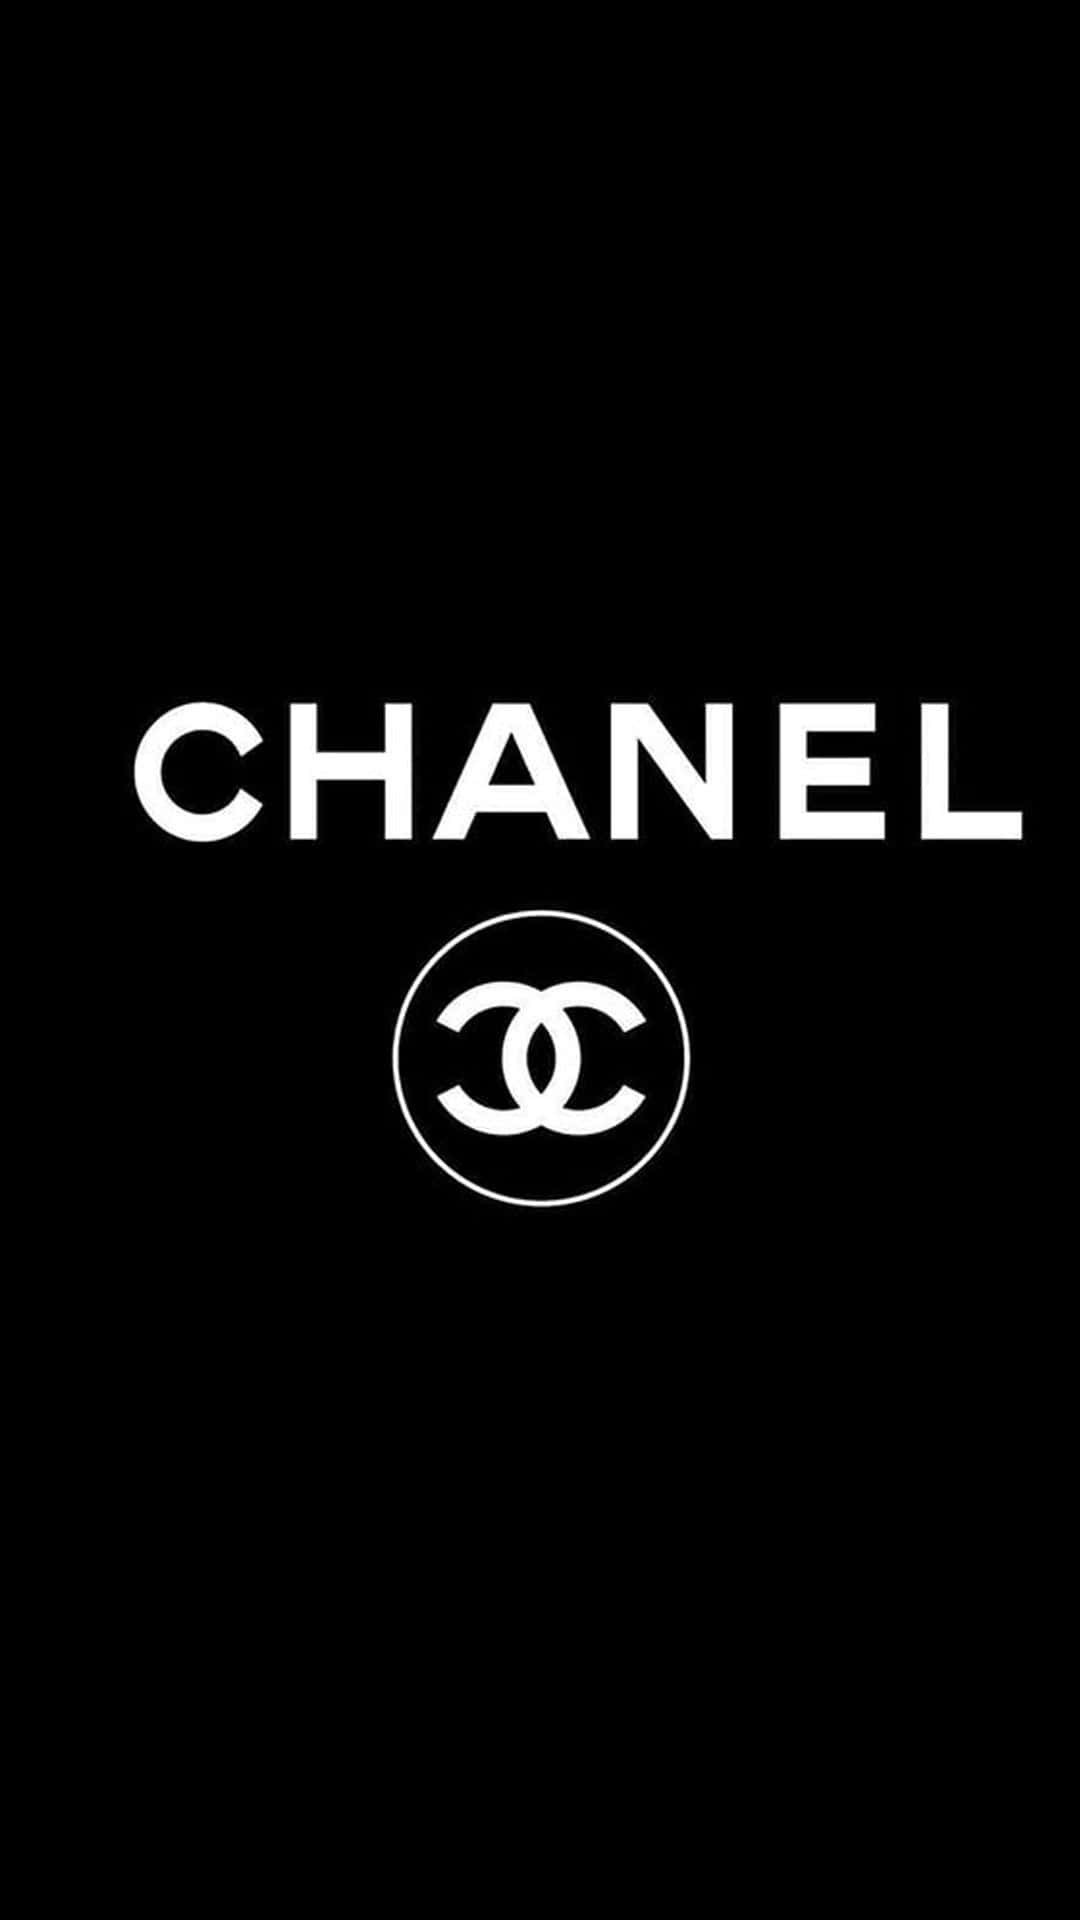 Elicónico Logotipo De Chanel, Simbolizando Elegancia Atemporal.